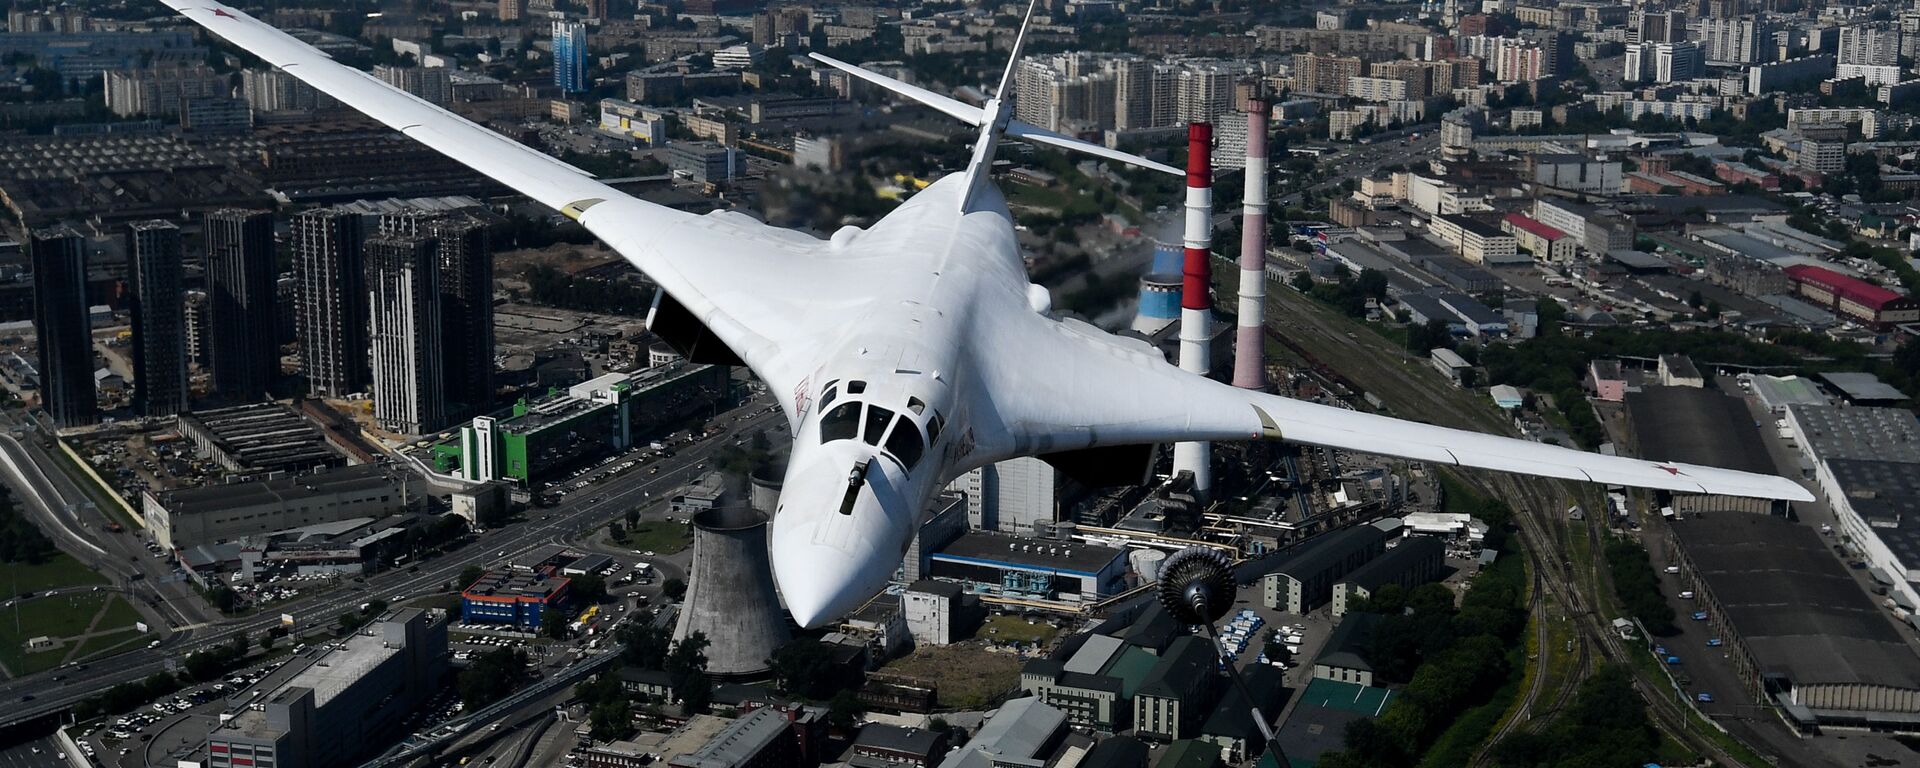 Máy bay ném bom chiến lược-tàu sân bay tên lửa Tu-160 trong cuộc diễn tập trang phục phần trên không của lễ duyệt binh kỷ niệm 75 năm Chiến thắng trong Chiến tranh Vệ quốc Vĩ đại ở Moskva. - Sputnik Việt Nam, 1920, 23.09.2021